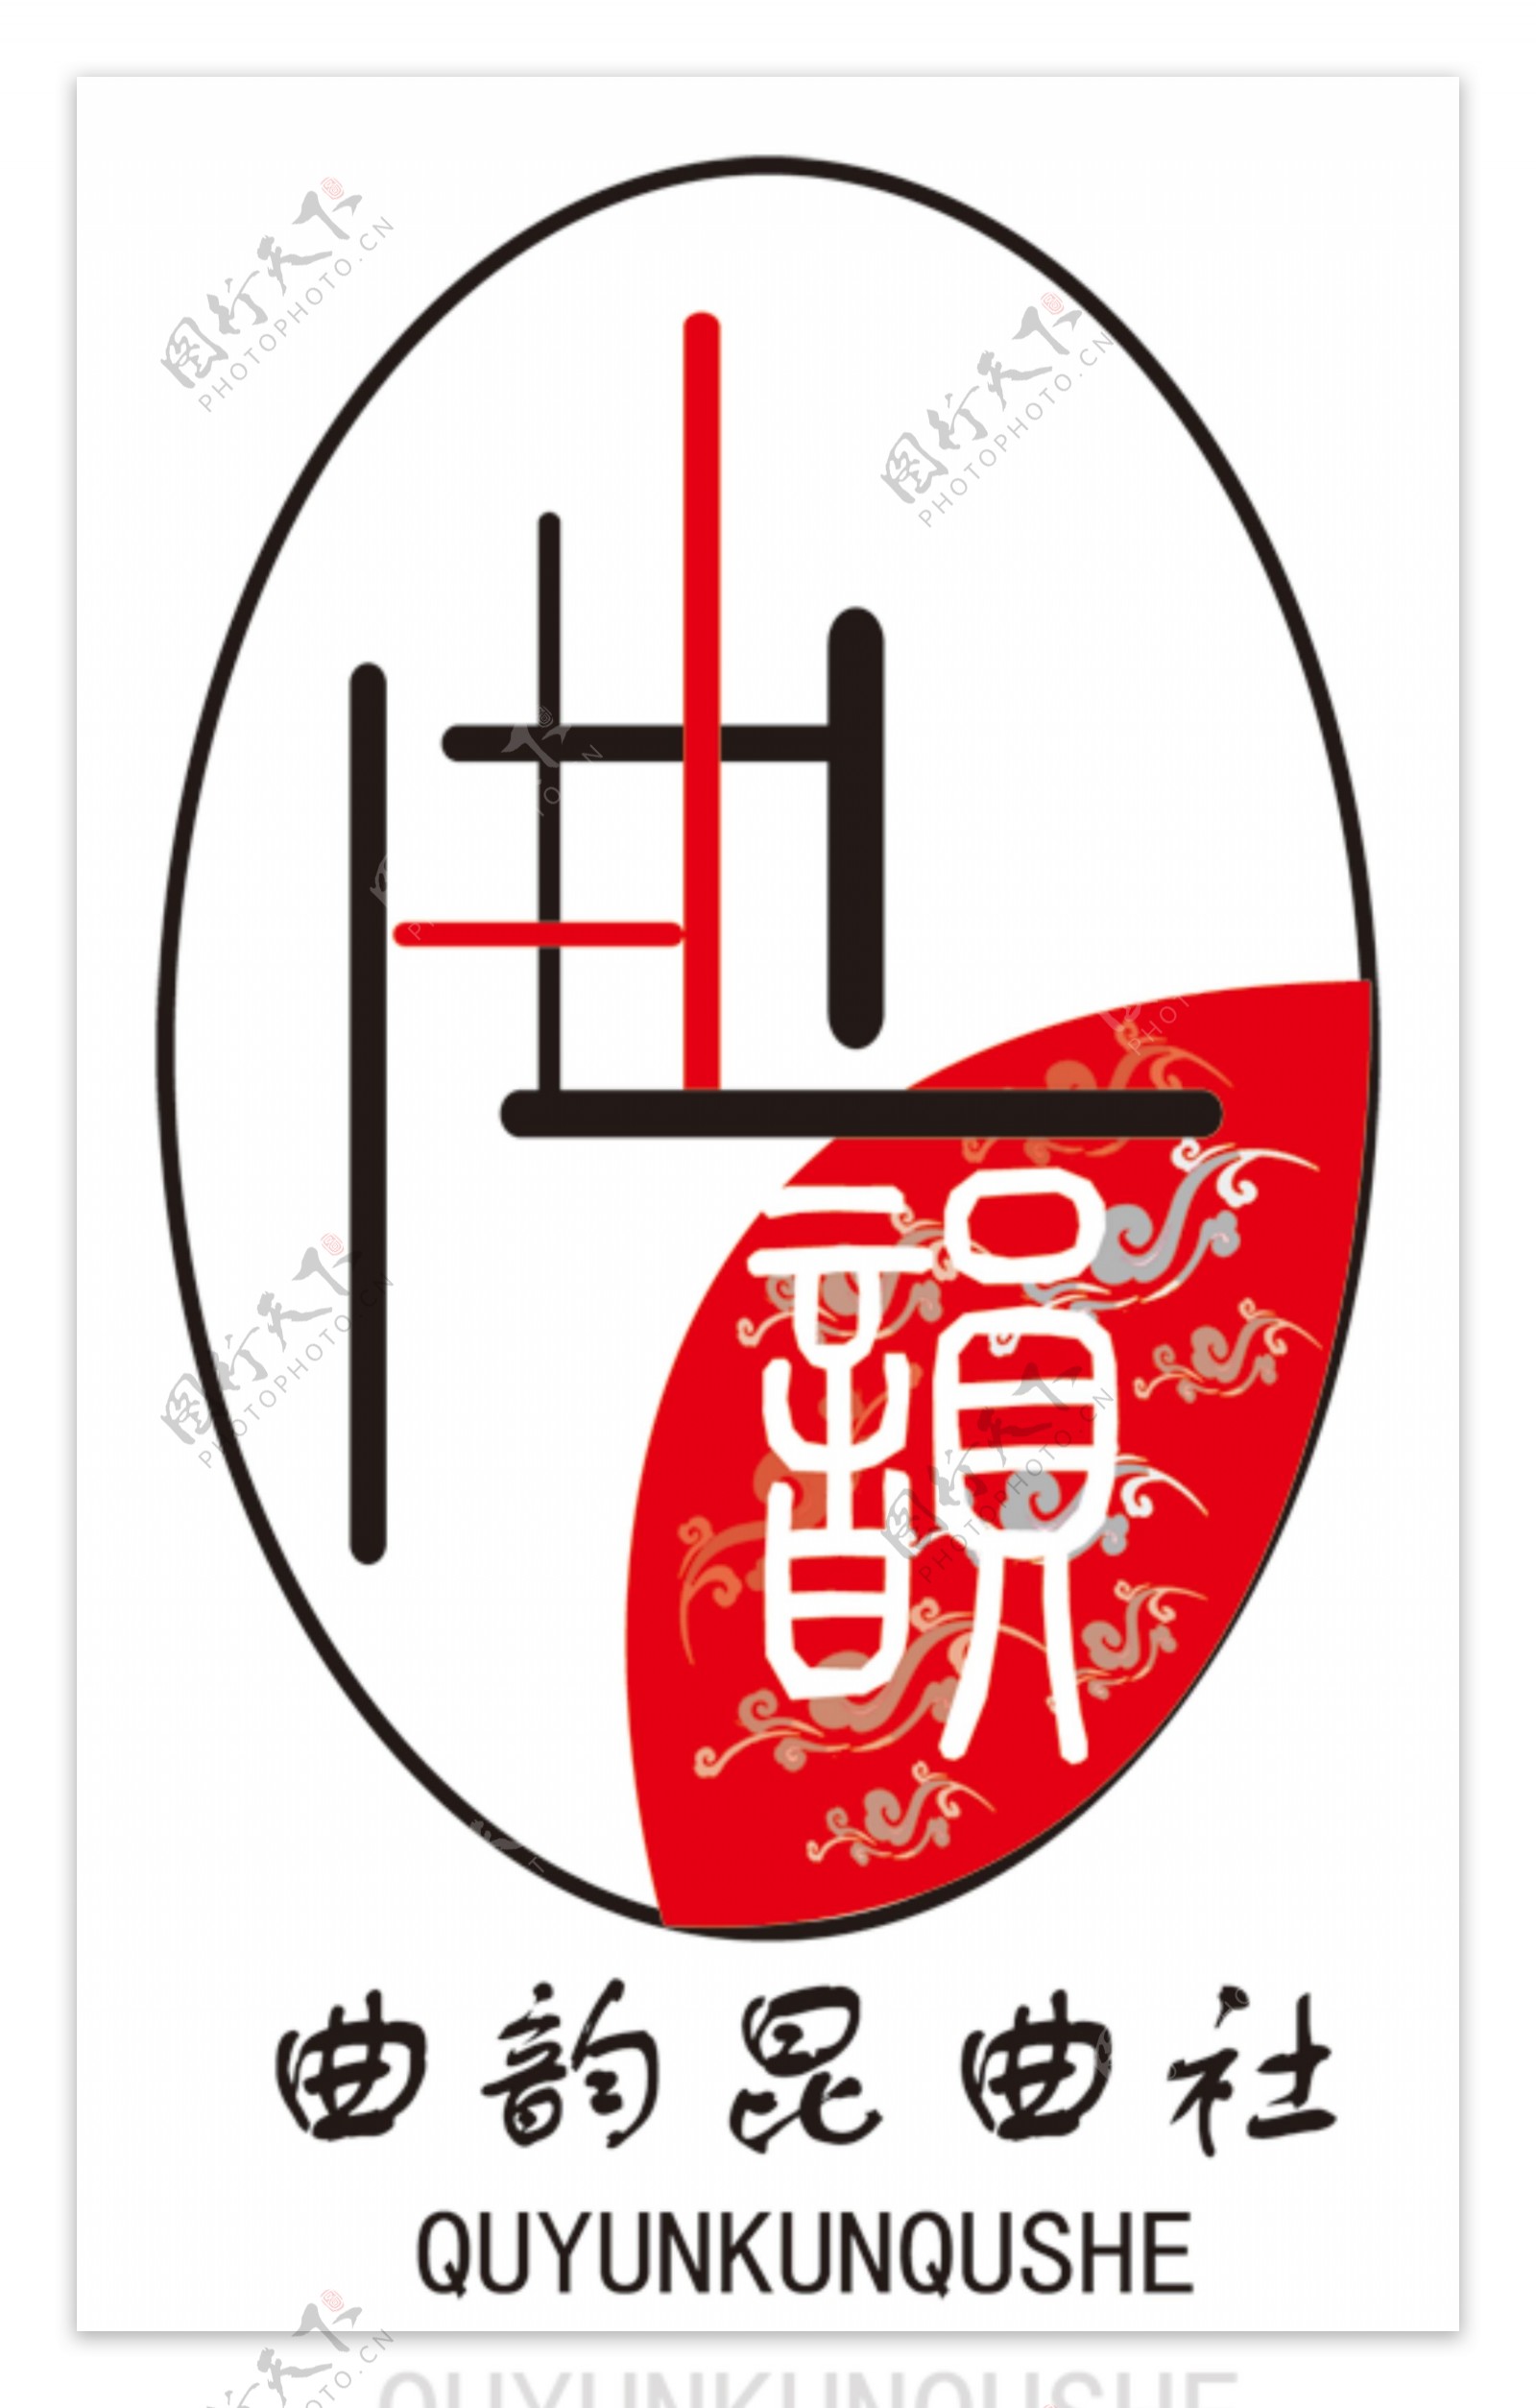 昆曲社logo设计